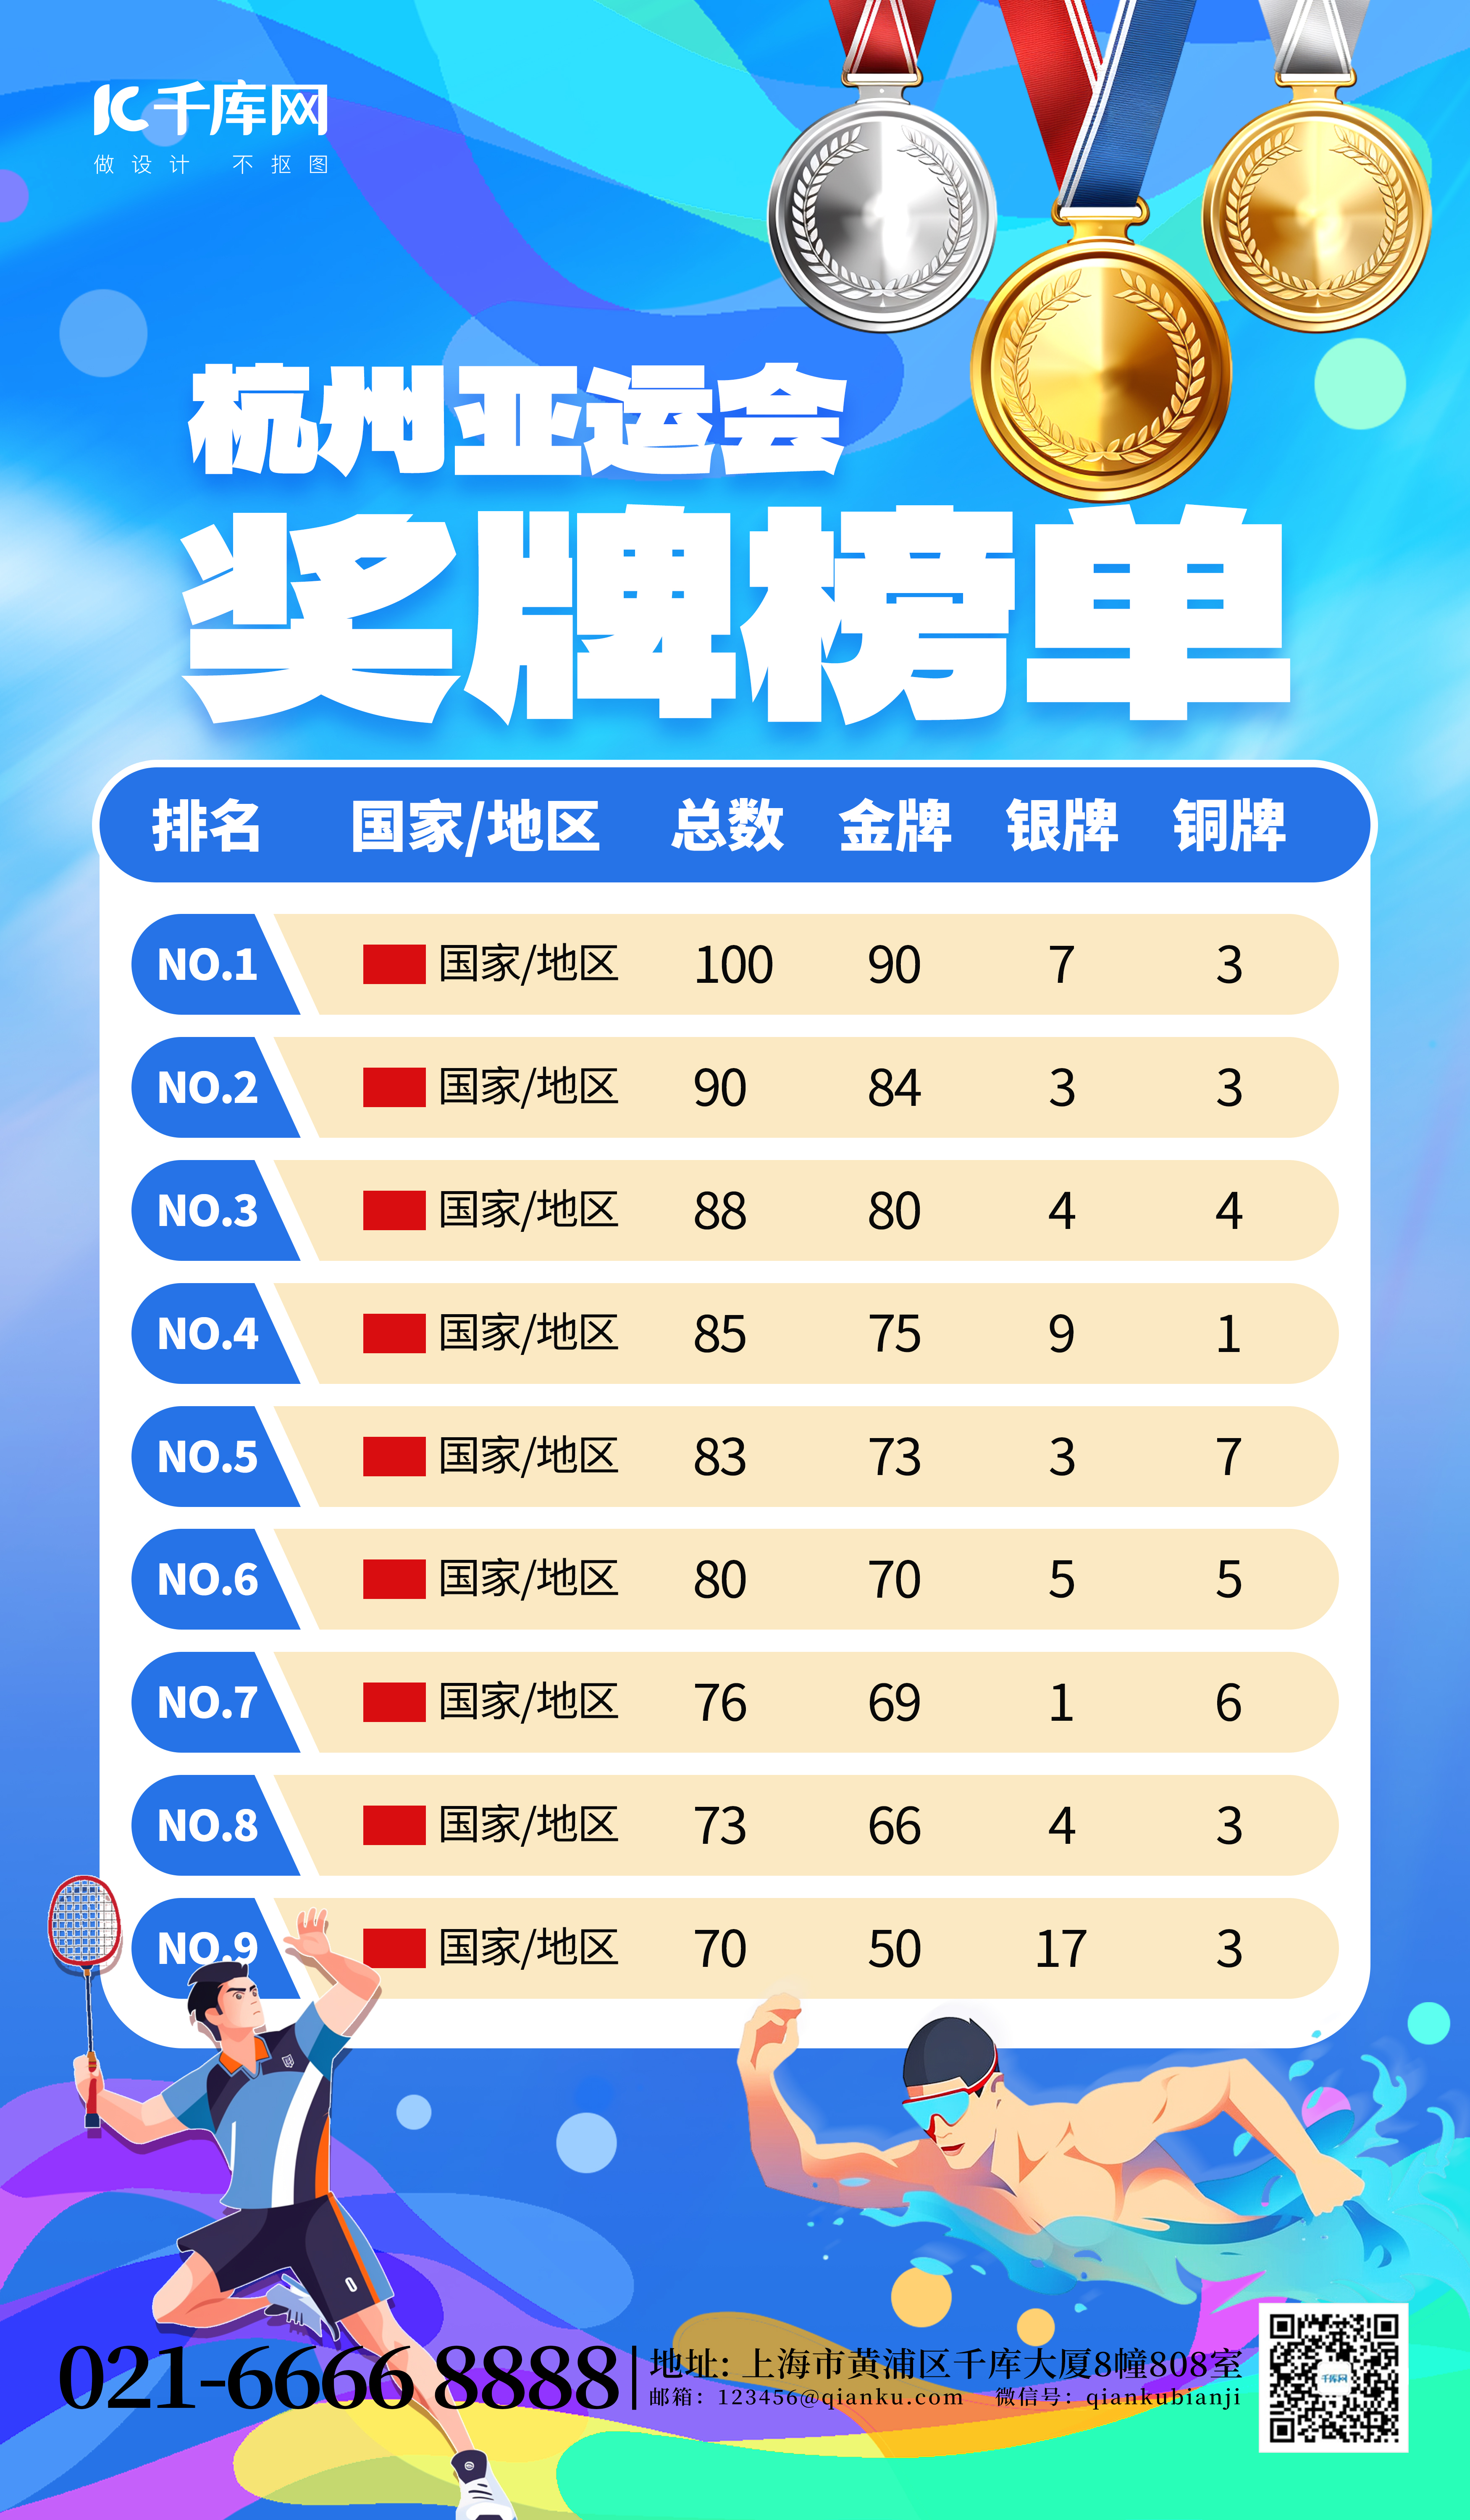 杭州亚运会奖牌榜蓝色创意海报图片